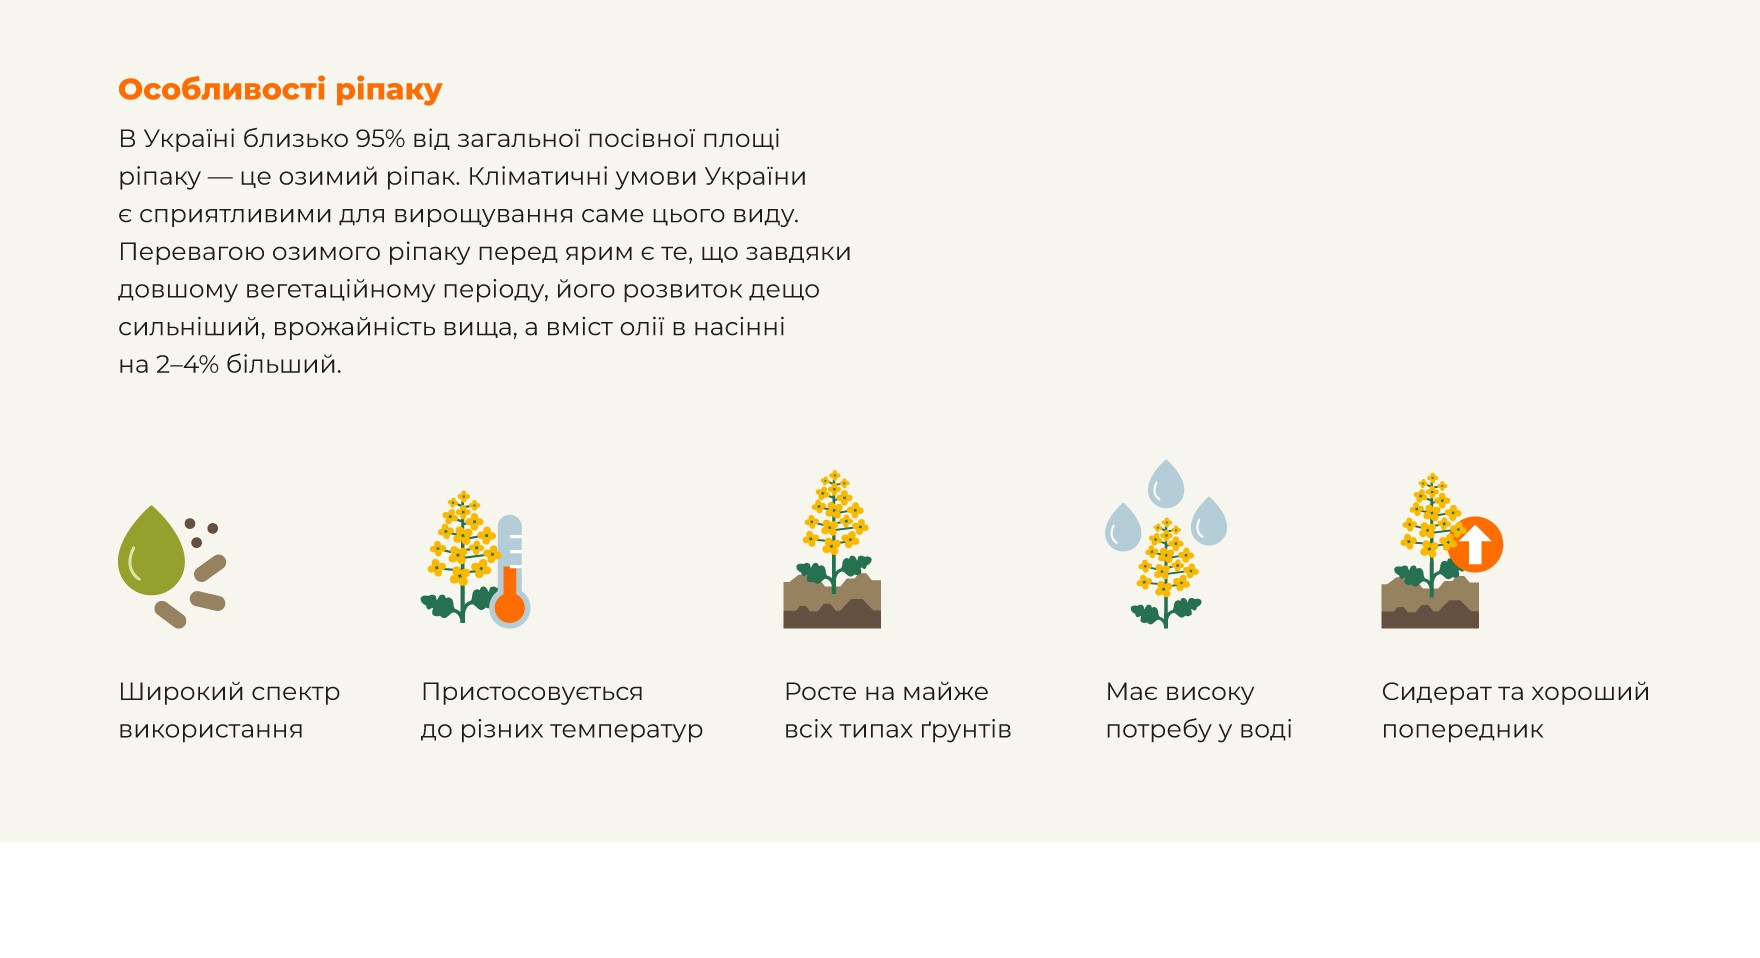 Особливості ріпаку. В Україні близько 95% від загальної посівної площі ріпаку — це озимий ріпак. Кліматичні умови України є сприятливими для вирощування саме цього виду. Перевагою озимого ріпаку перед ярим є те, що завдяки довшому вегетаційному періоду, його розвиток дещо сильніший, врожайність вища, а вміст олії в насінні на 2-4% більший. Широкий спектр використання; Пристосовується до різних температур; Росте майже на всіх типах грунтів; Має високу потребу у воді; Сидерат та хороший попередник.